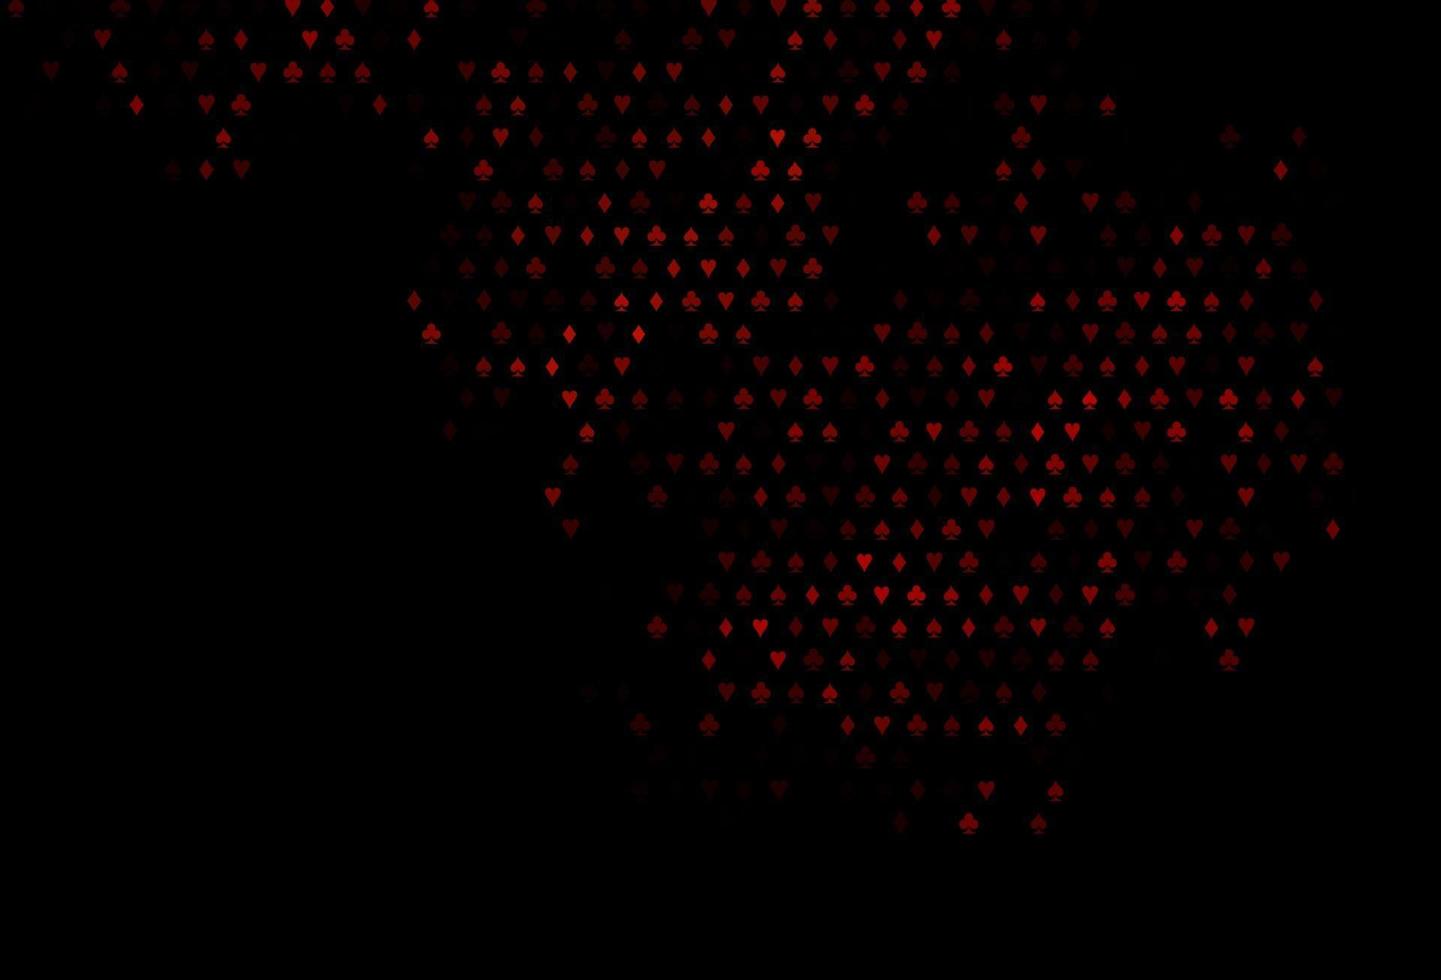 modelo de vetor vermelho escuro com símbolos de pôquer.